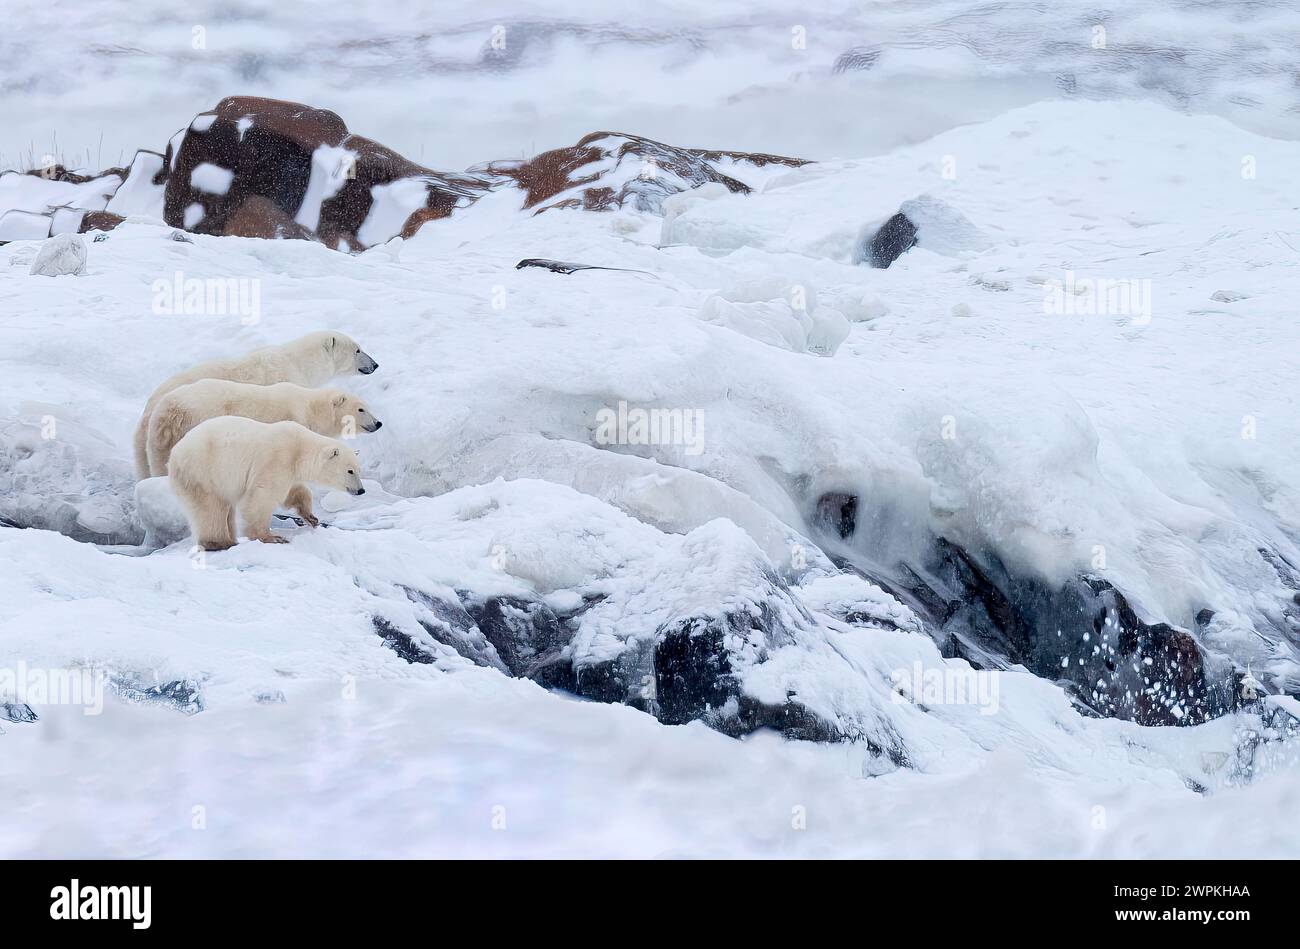 Esplora questa zona innevata insieme al CANADA ADORABILI immagini di due orsi polari che giocano tra loro ti faranno ridere. Intorno alle due Foto Stock